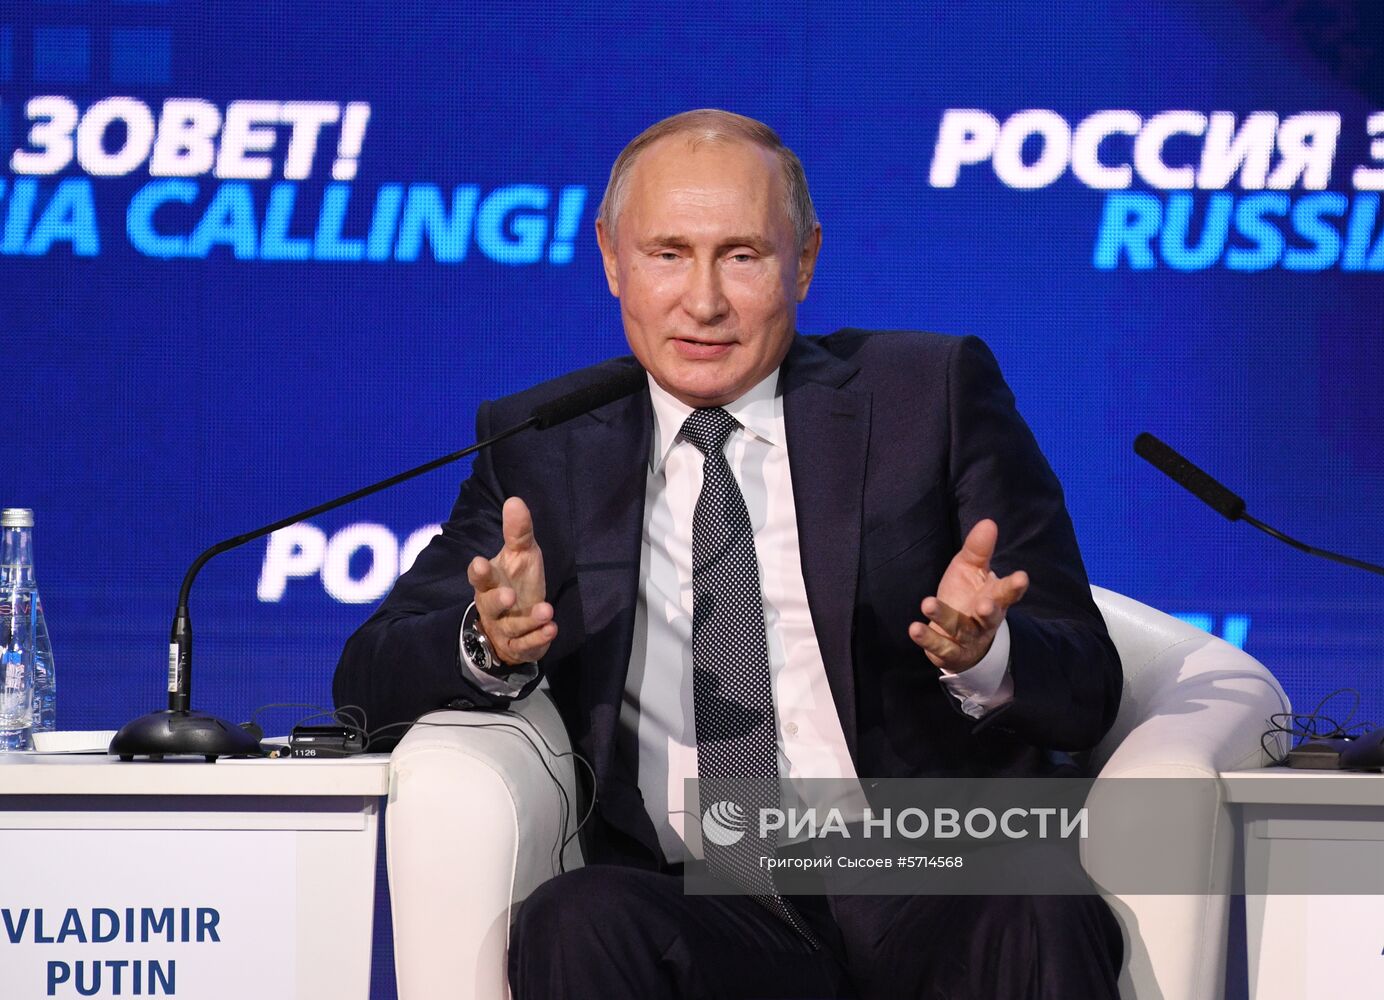 Президент РФ В. Путин посетил инвестиционный форум ВТБ Капитал "Россия зовёт!"